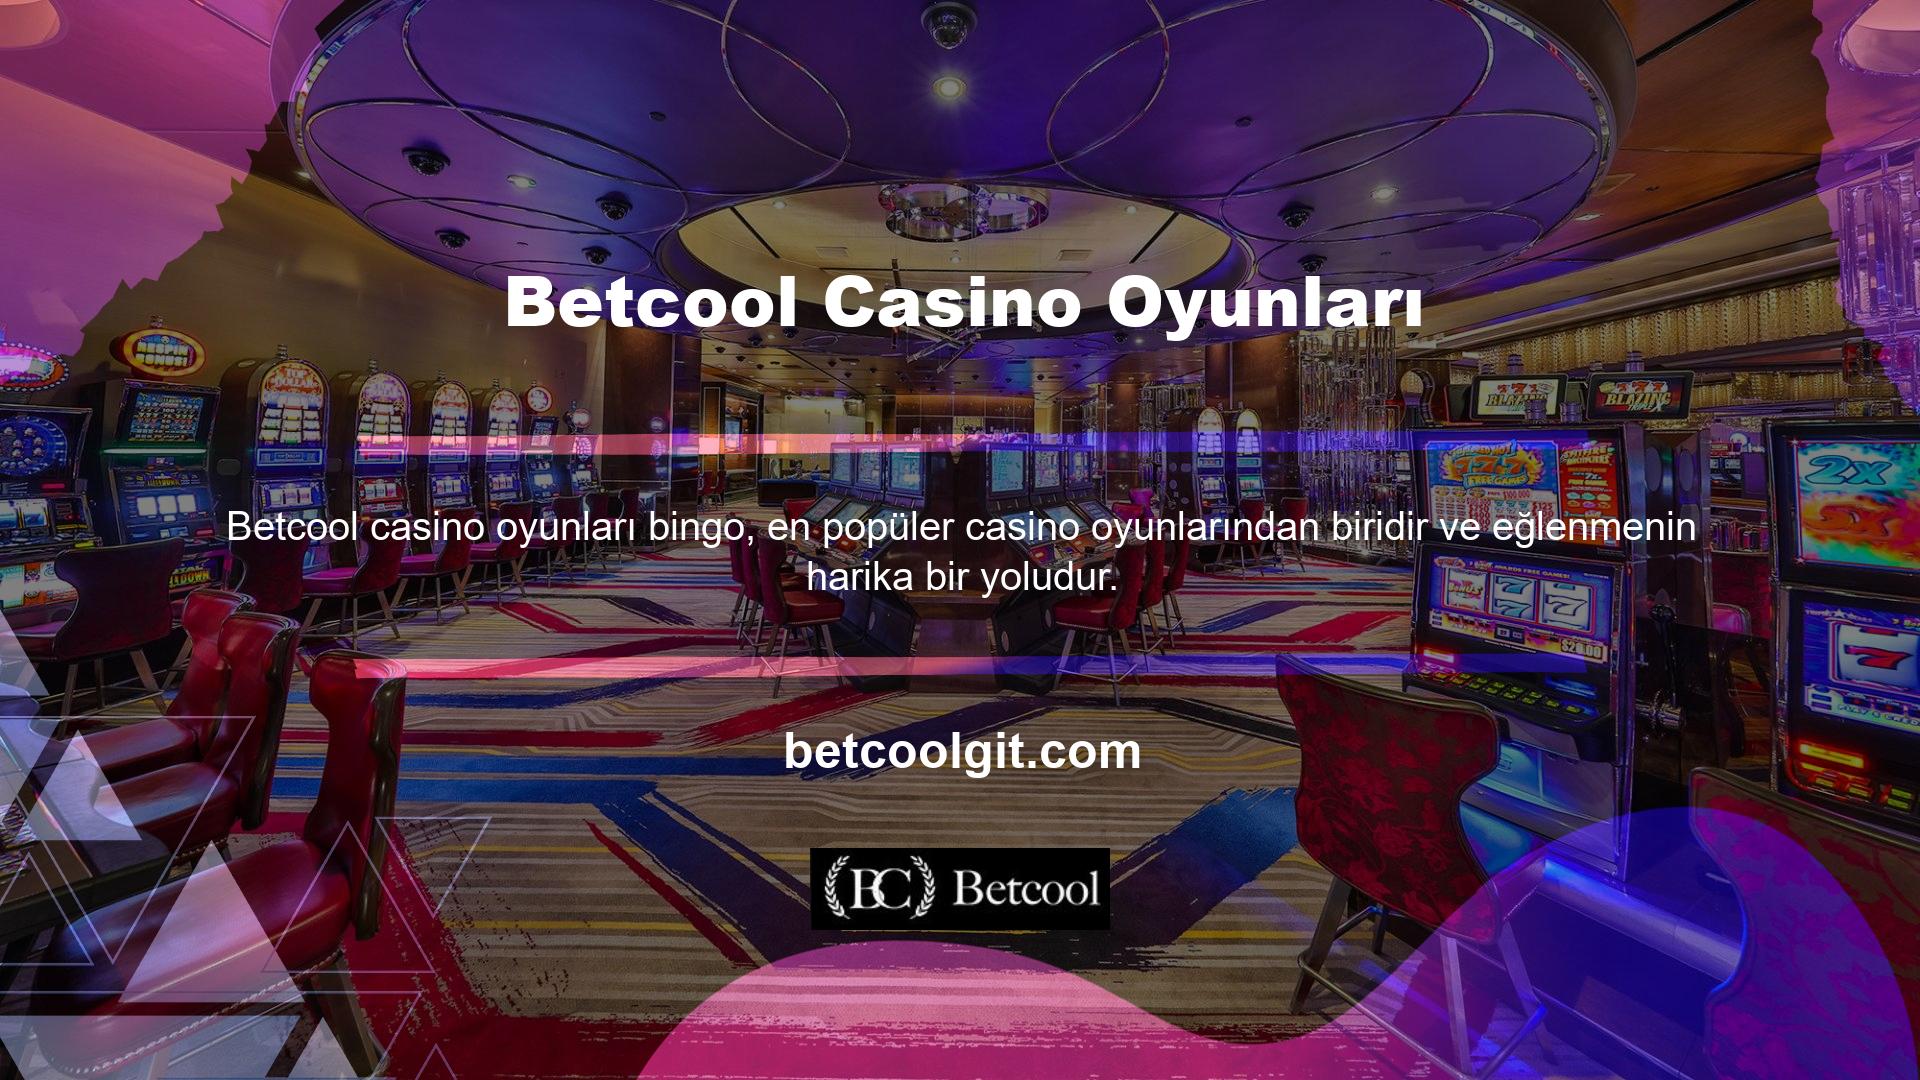 Çevrimiçi bingo, geçmişte casinolarda oynanan oyunların ortaya çıkmasıyla popüler hale geldi